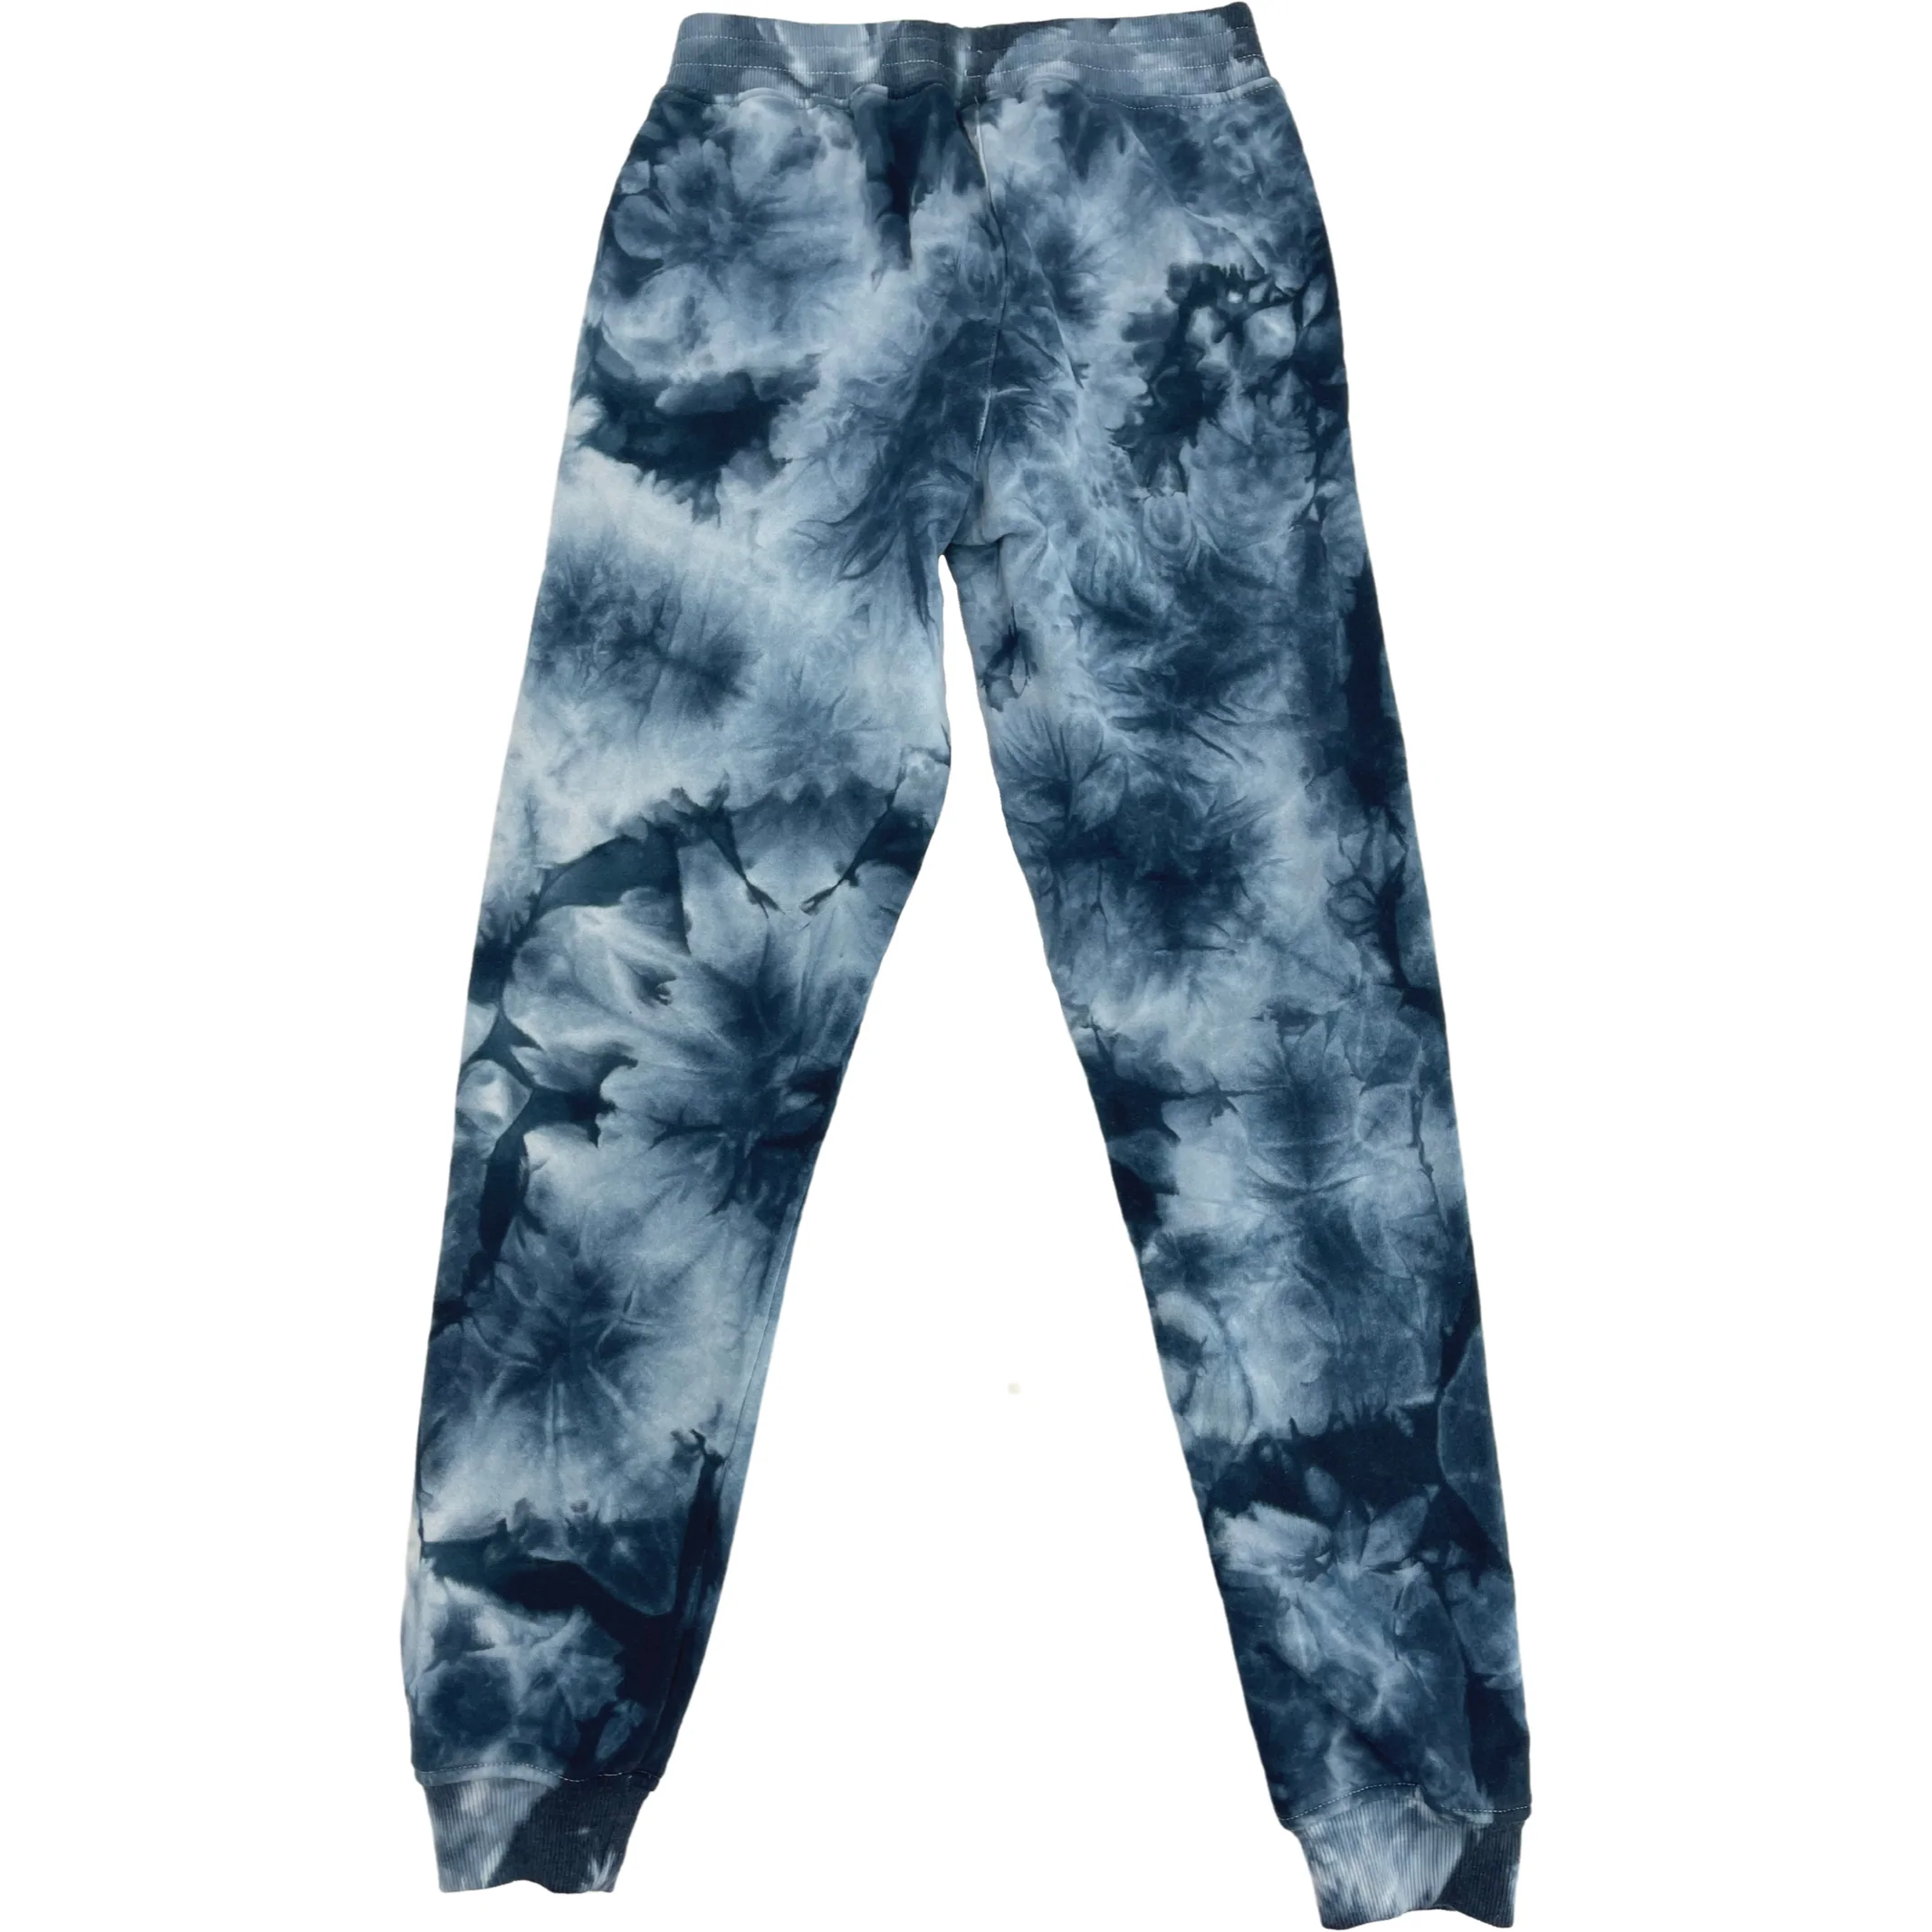 Fila Girl's Sweatpants / Blue & White / Tie-Dye Look / Size Large